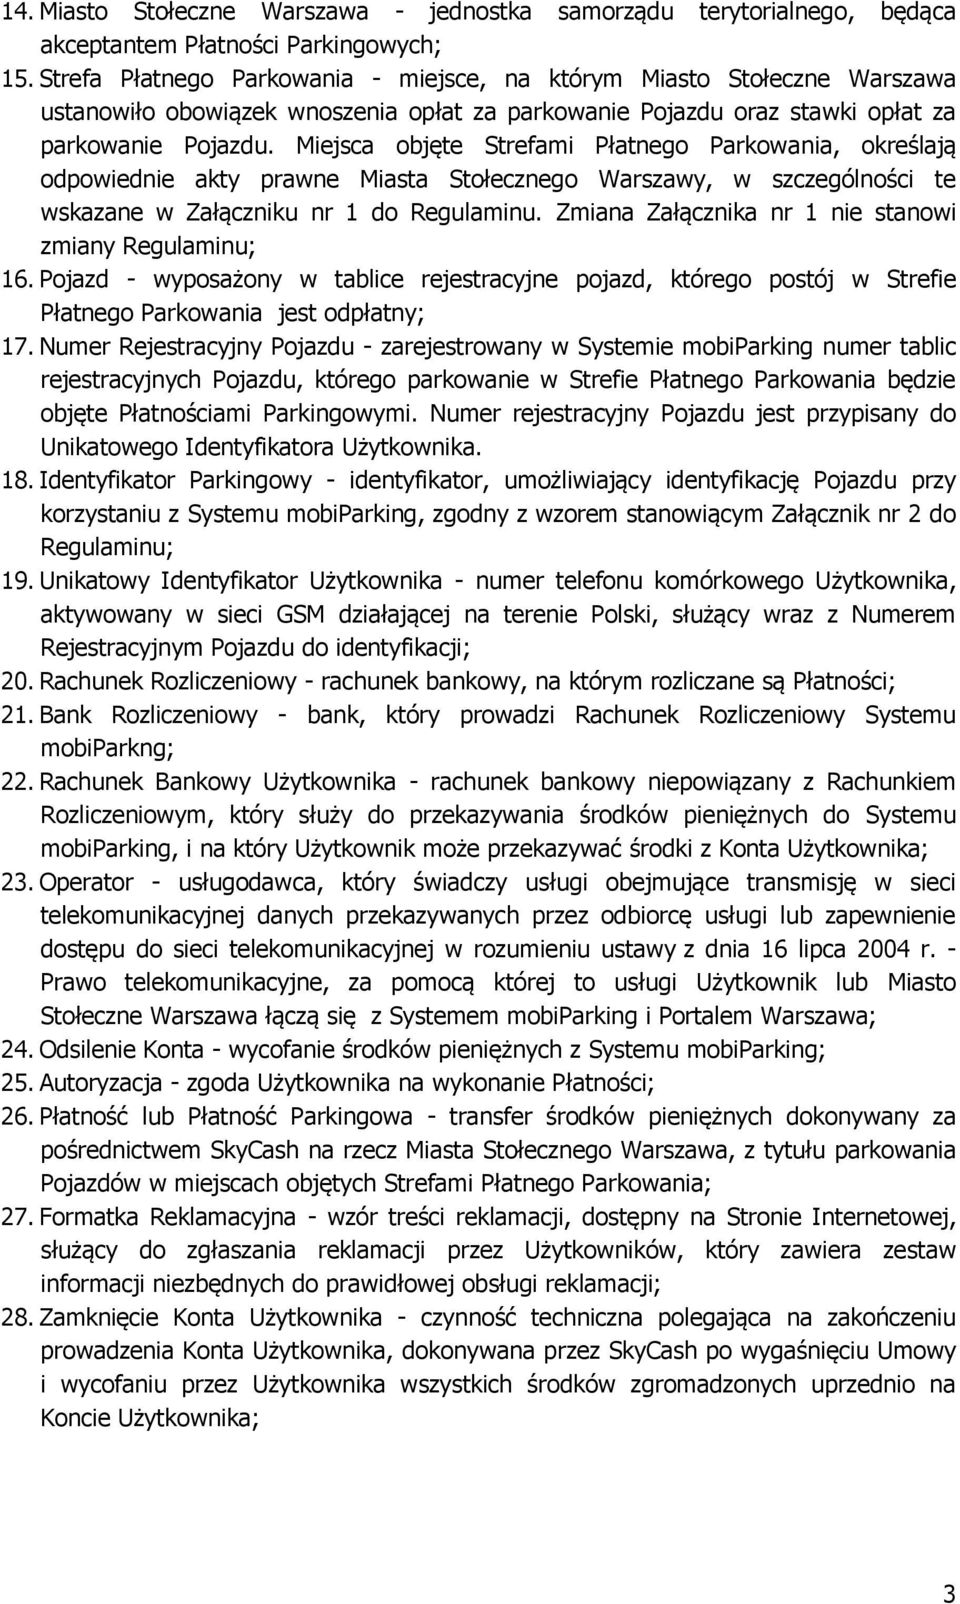 Miejsca objęte Strefami Płatnego Parkowania, określają odpowiednie akty prawne Miasta Stołecznego Warszawy, w szczególności te wskazane w Załączniku nr 1 do Regulaminu.